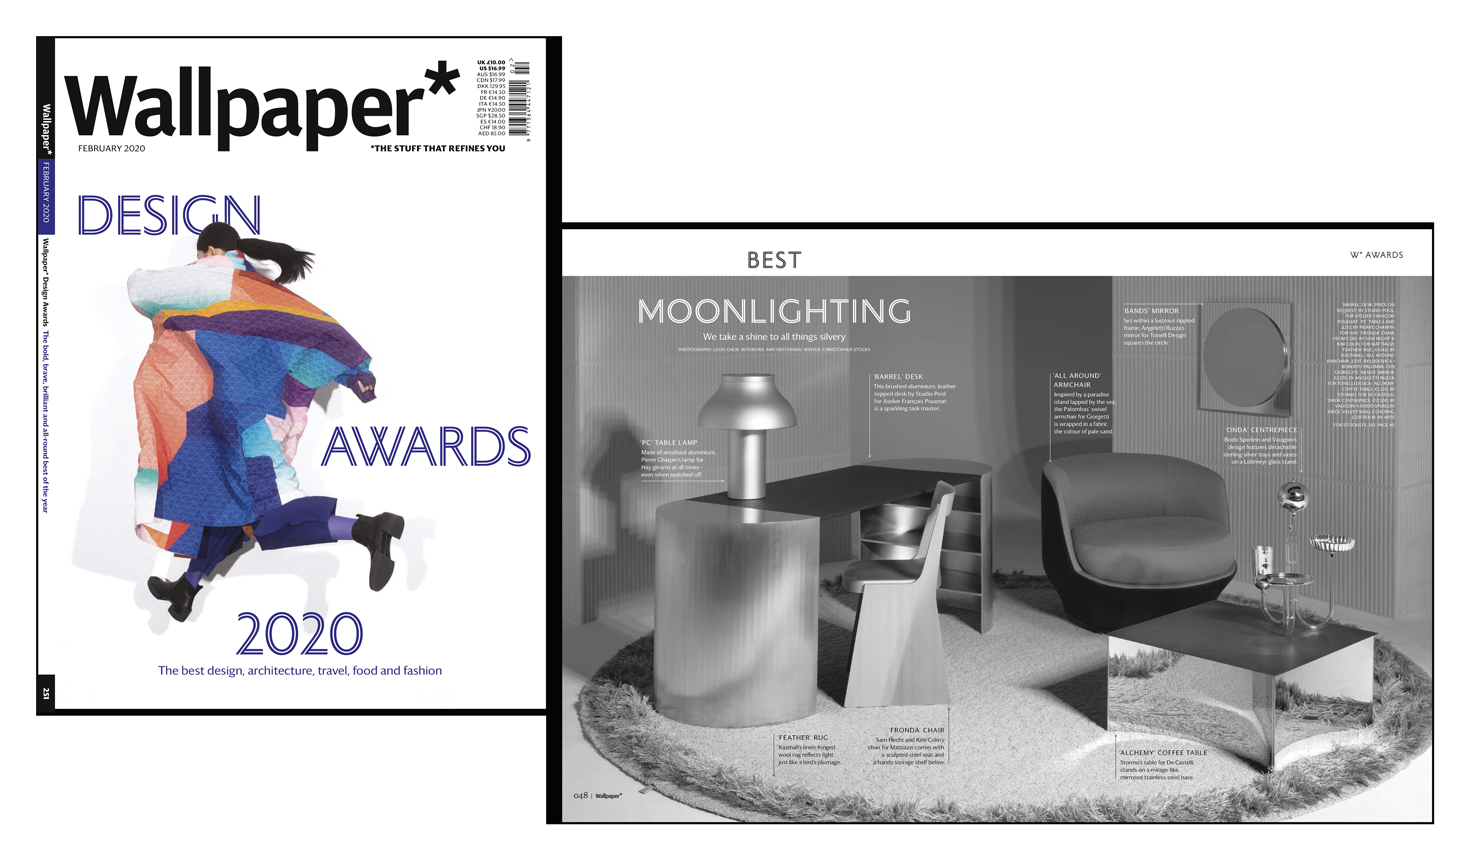 All Around ist “Best Moonlighting” der Wallpaper Design Awards 2020 2